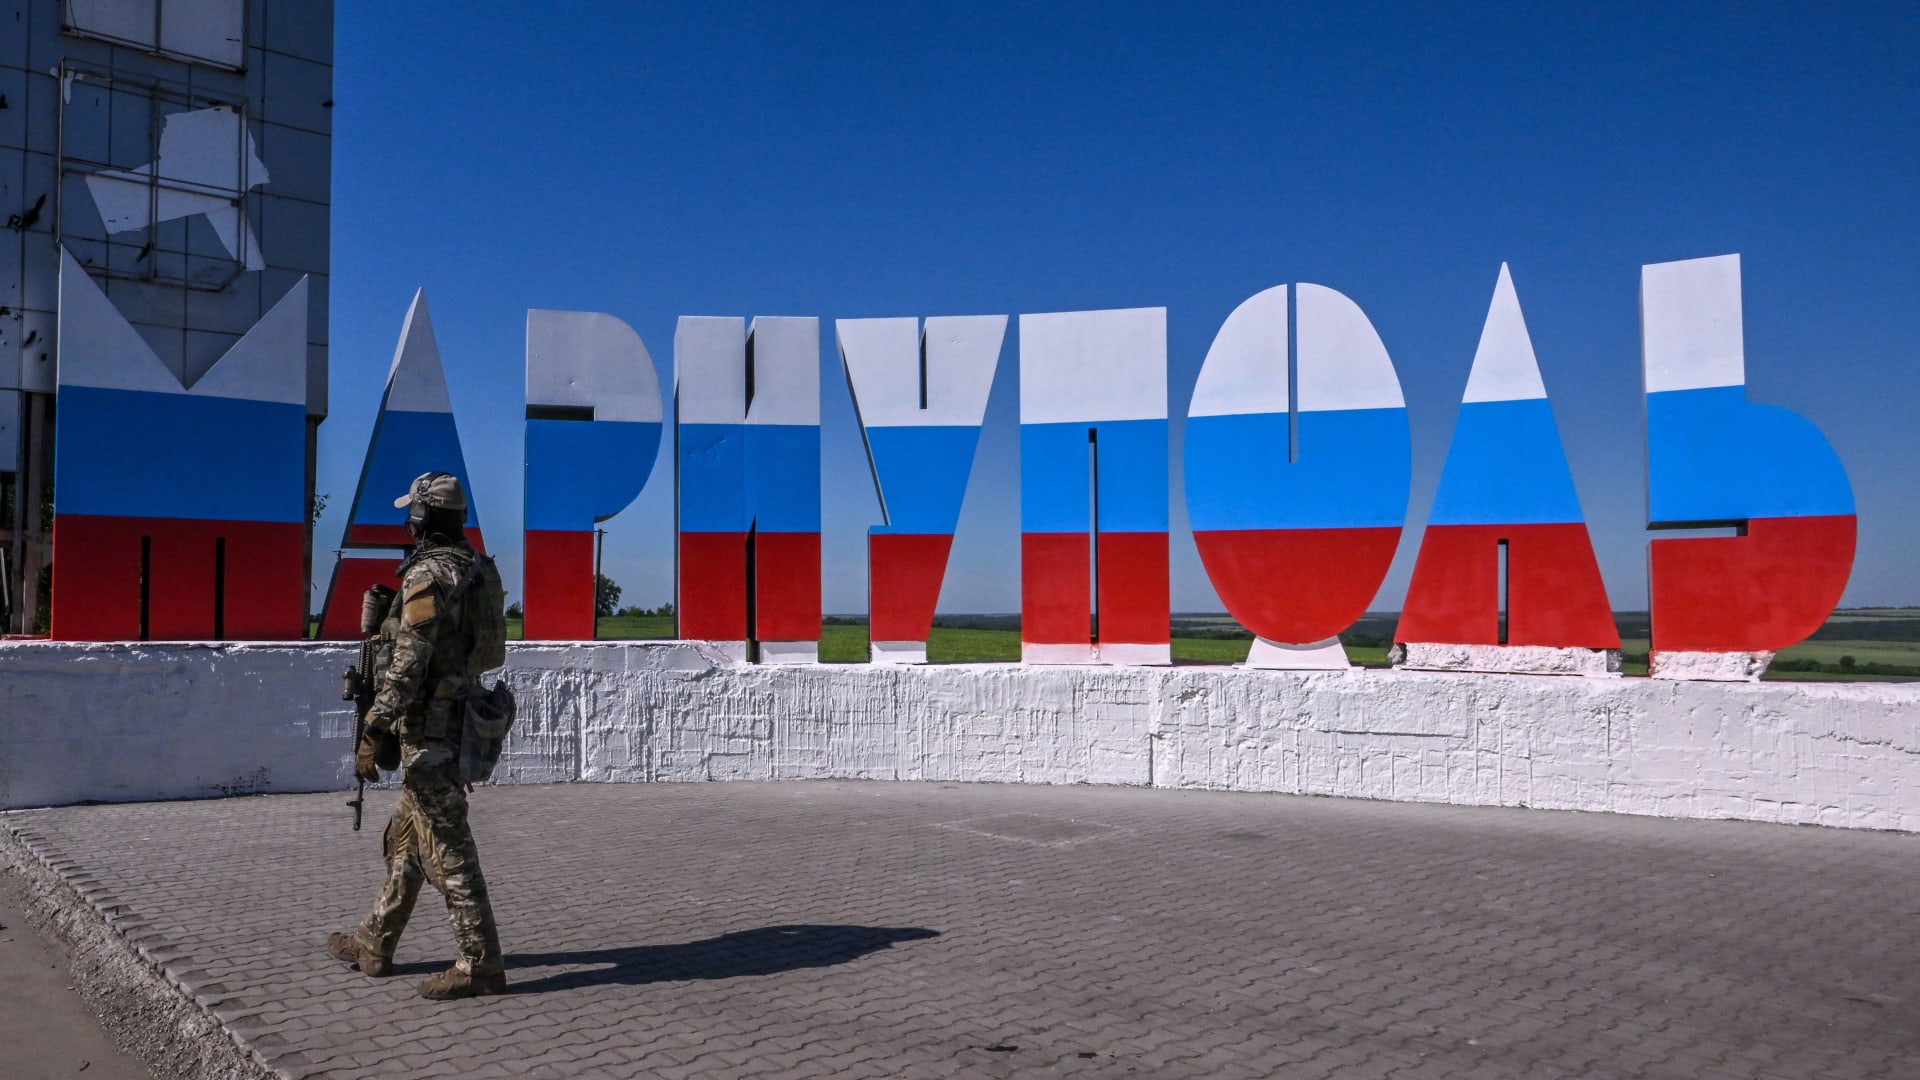 جندي روسي يسير بالقرب من لافتة ترحيب مكتوب عليها "ماريوبول" والتي تم رسمها بألوان العلم الروسي